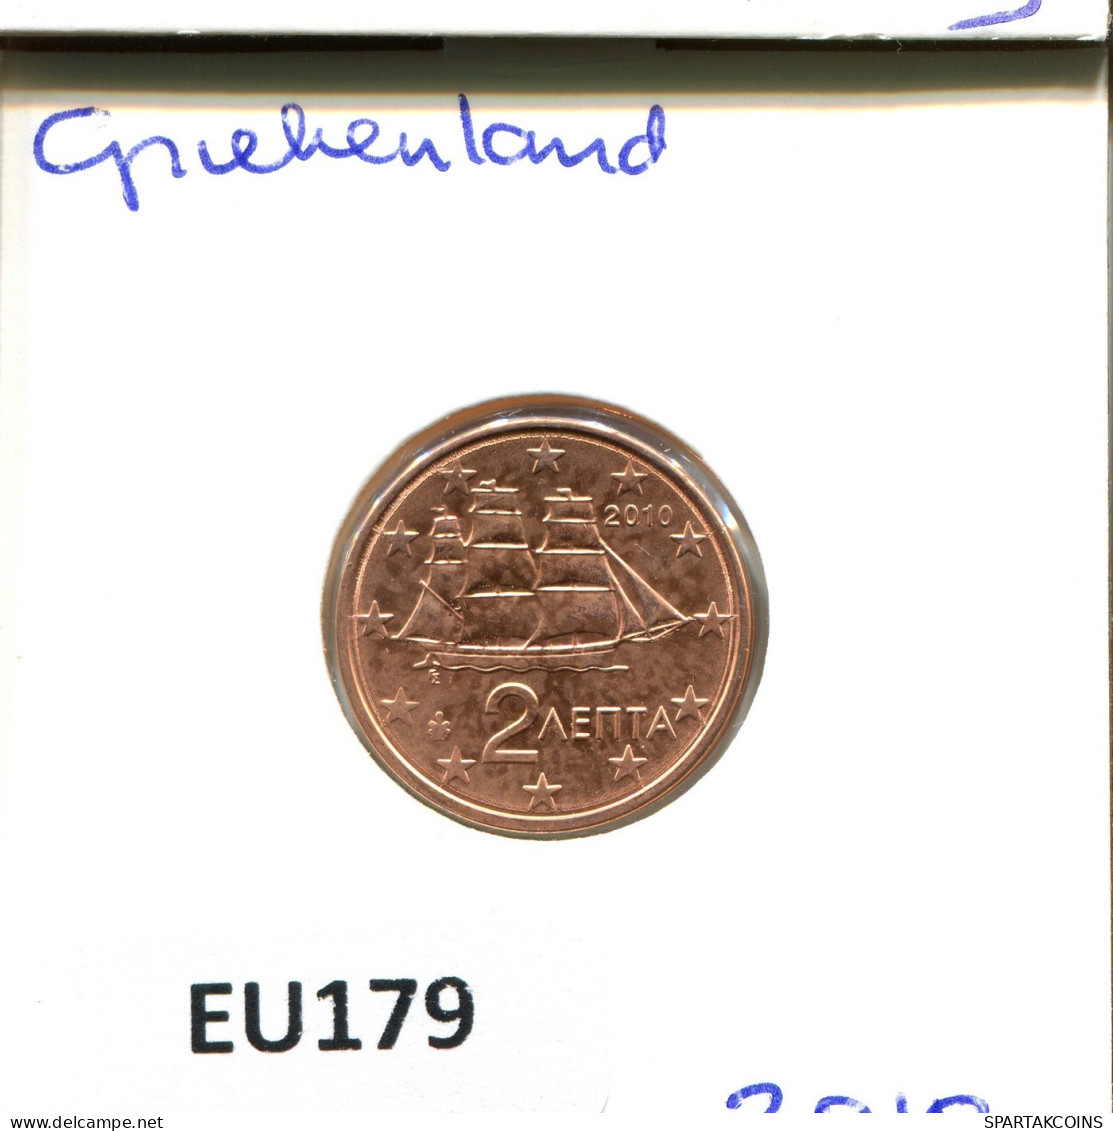 2 EURO CENTS 2010 GREECE Coin #EU179.U.A - Greece